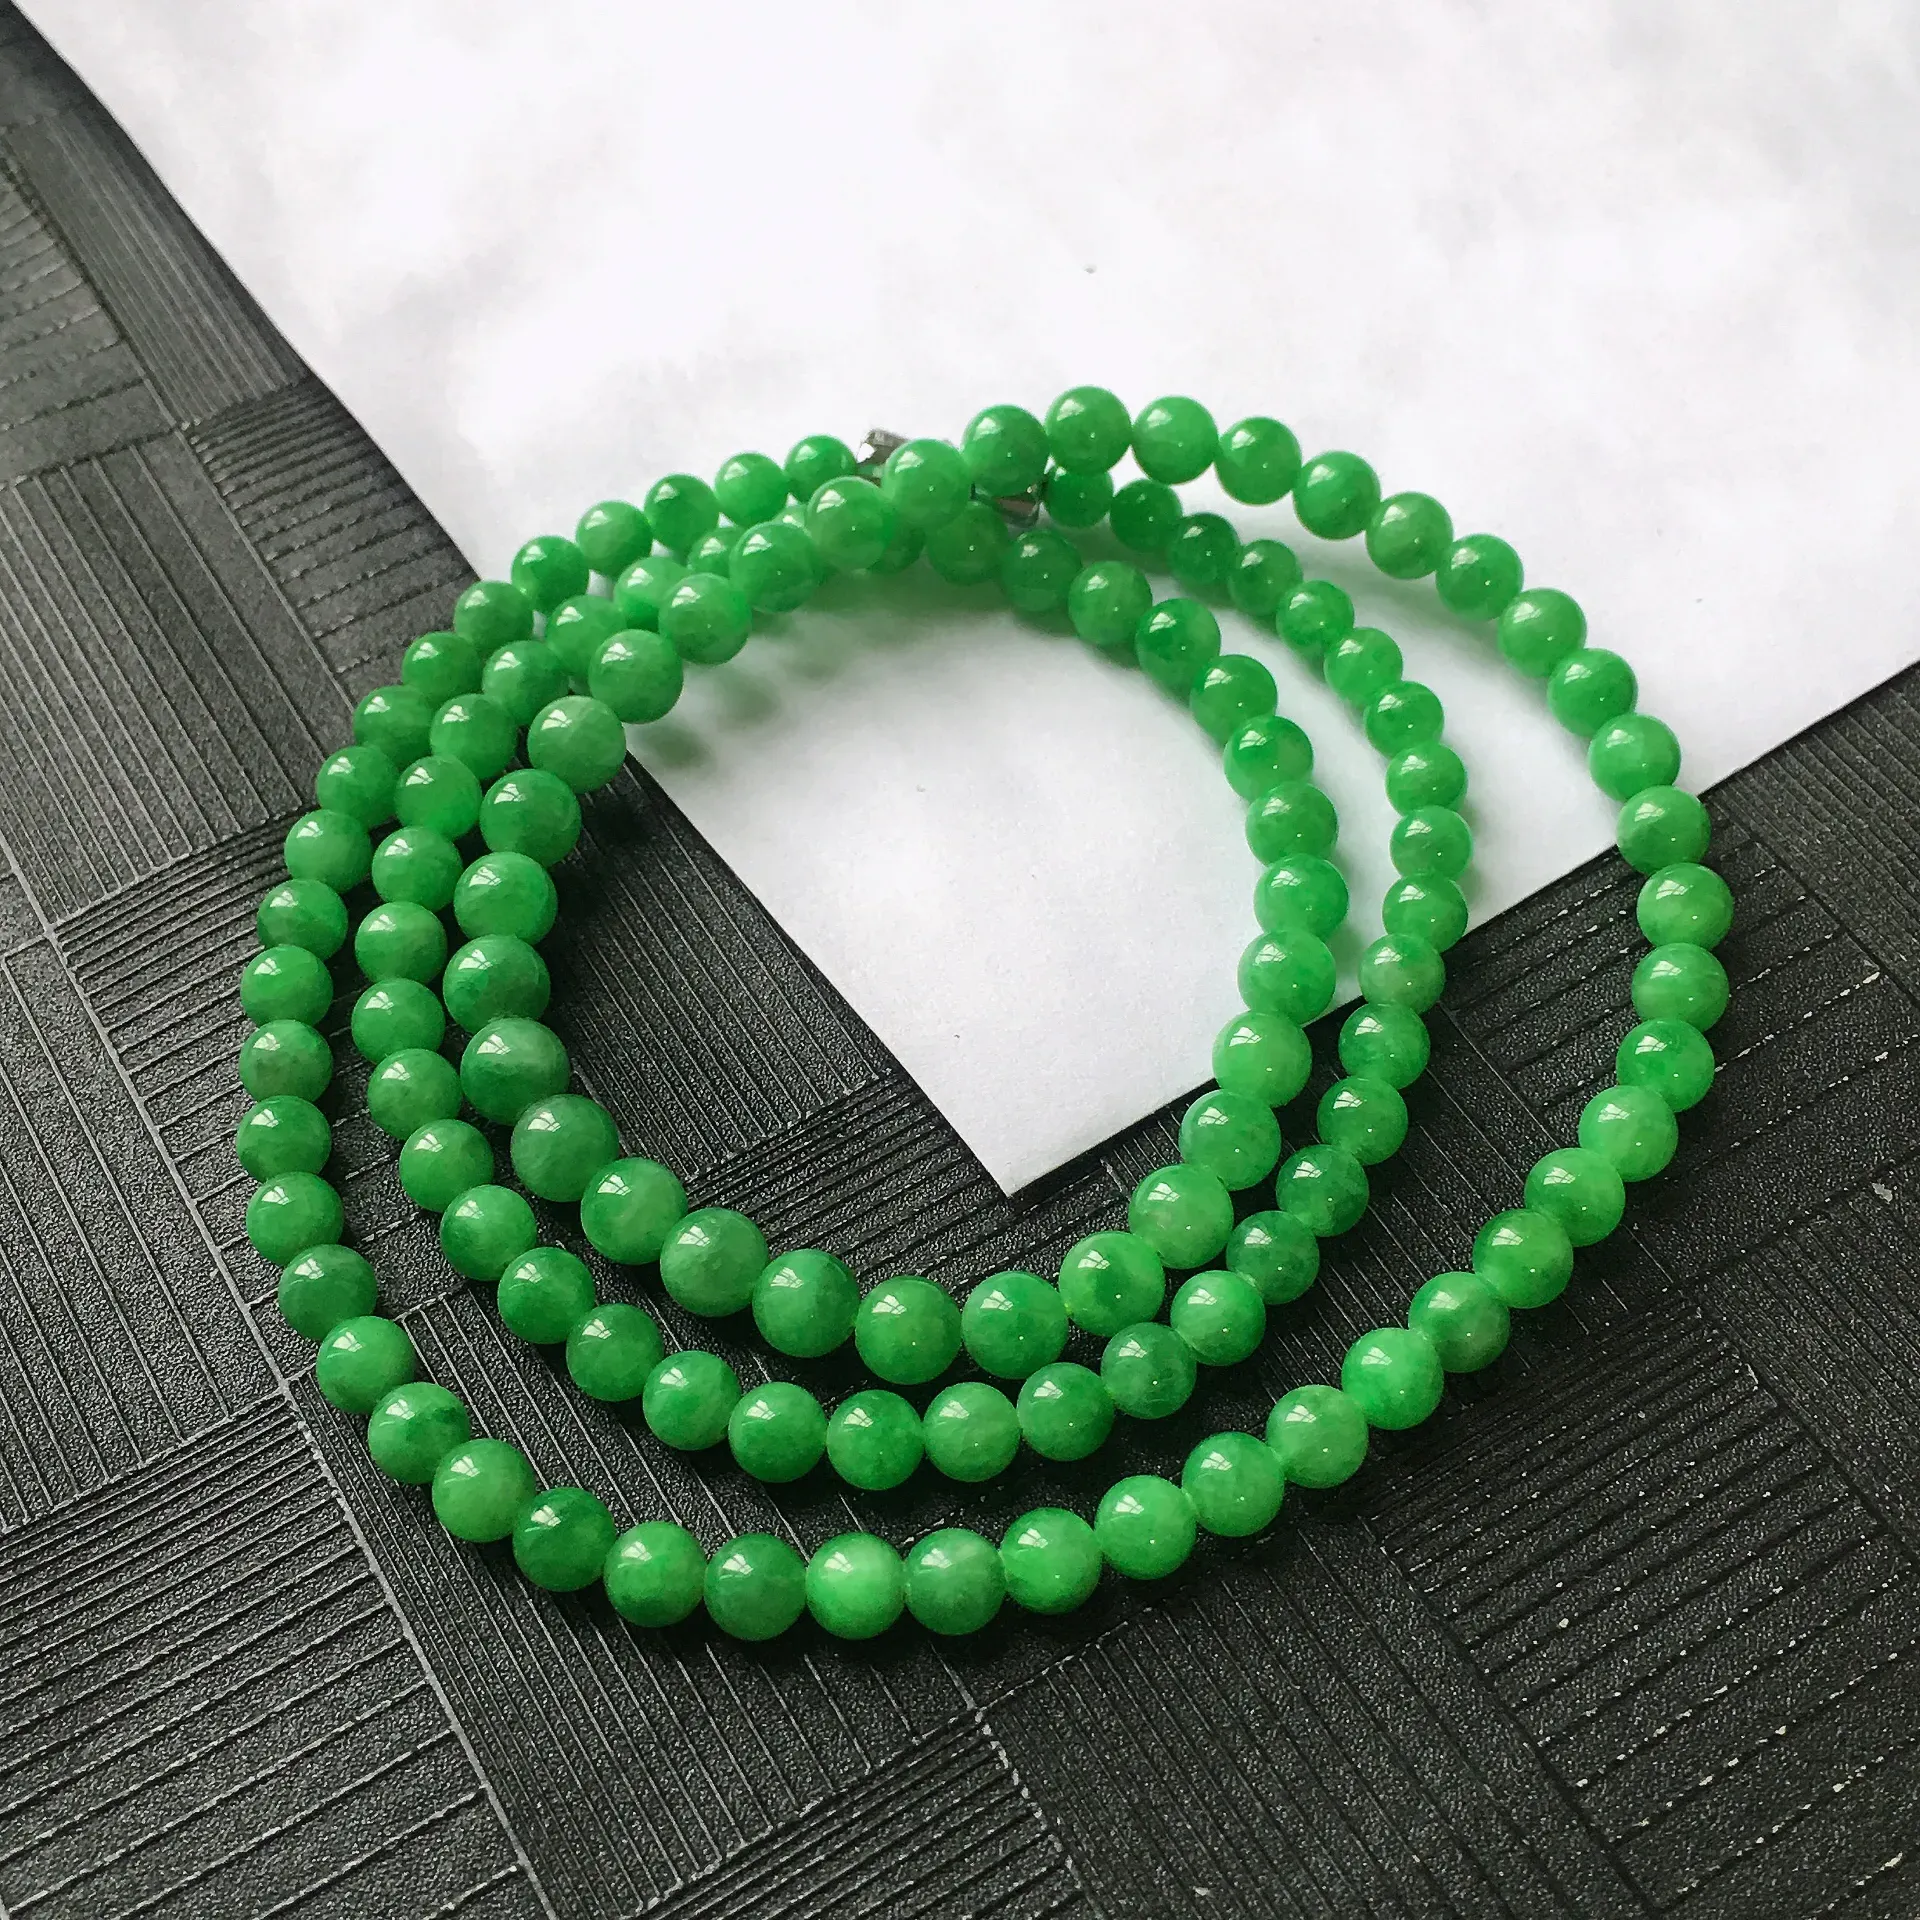 天然A货翡翠满阳绿圆珠项链，种水好玉质细腻温润，颜色漂亮。尺寸：取大 5.5mm 取小 4.3mm 